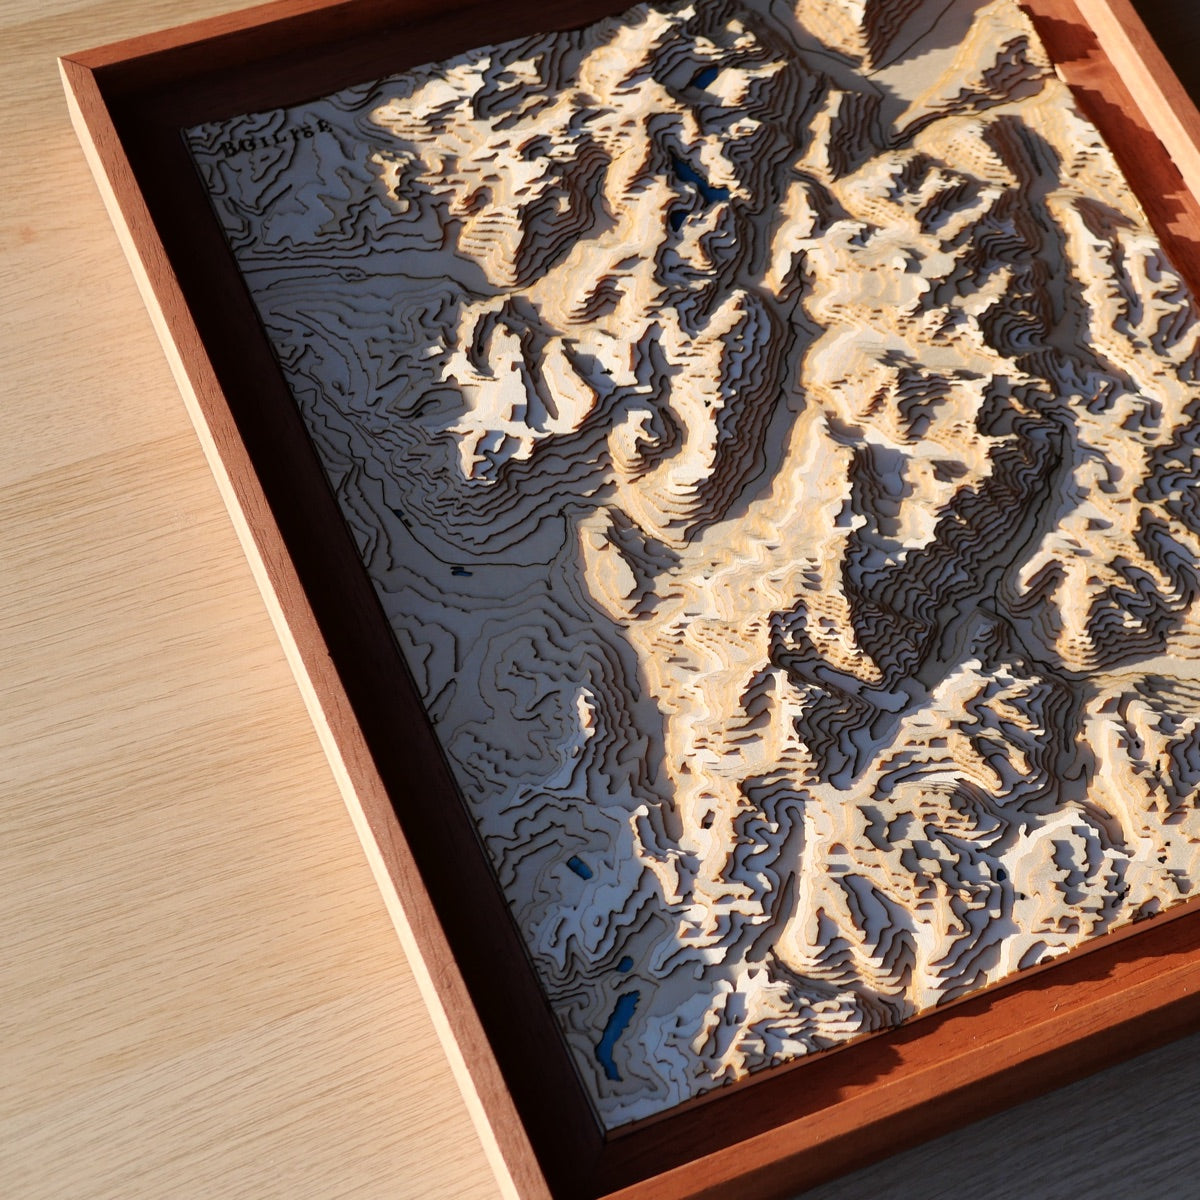 Relief de la vallée de Chamonix au soleil couchant représenté avec de fines couches de bois assemblées à la main